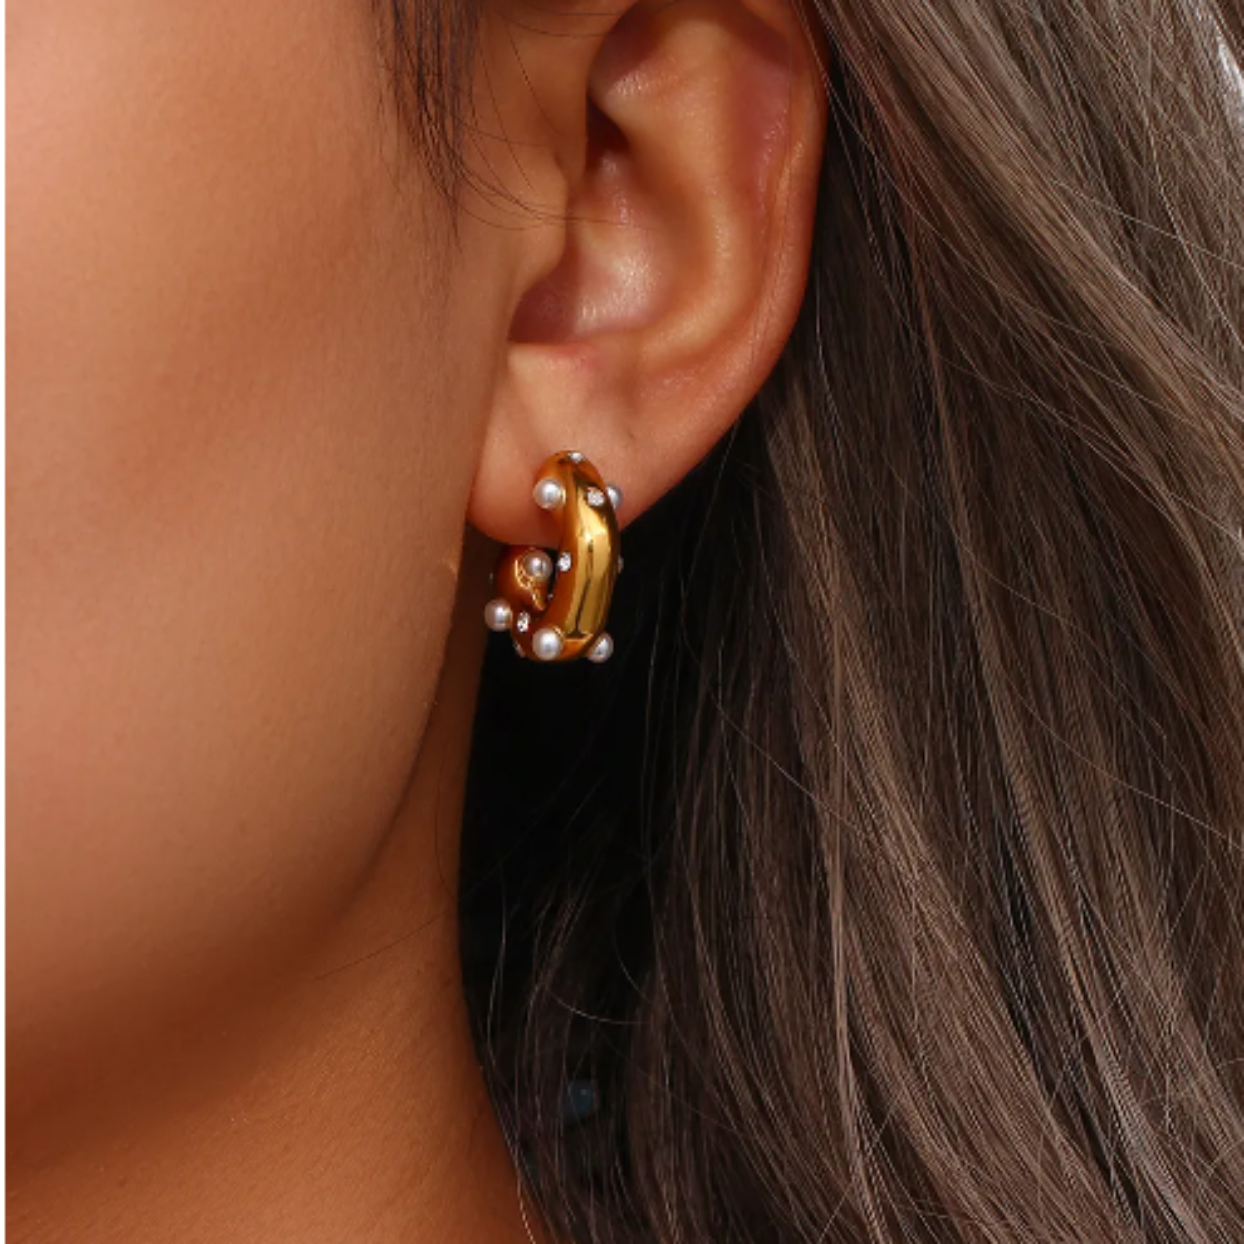 MARGALA - PEARL & CUBIC ZIRCONIA WATERPROOF 18K GOLD EARRINGS - Premium earrings from www.beachboho.com.au - Just $49! Shop now at www.beachboho.com.au